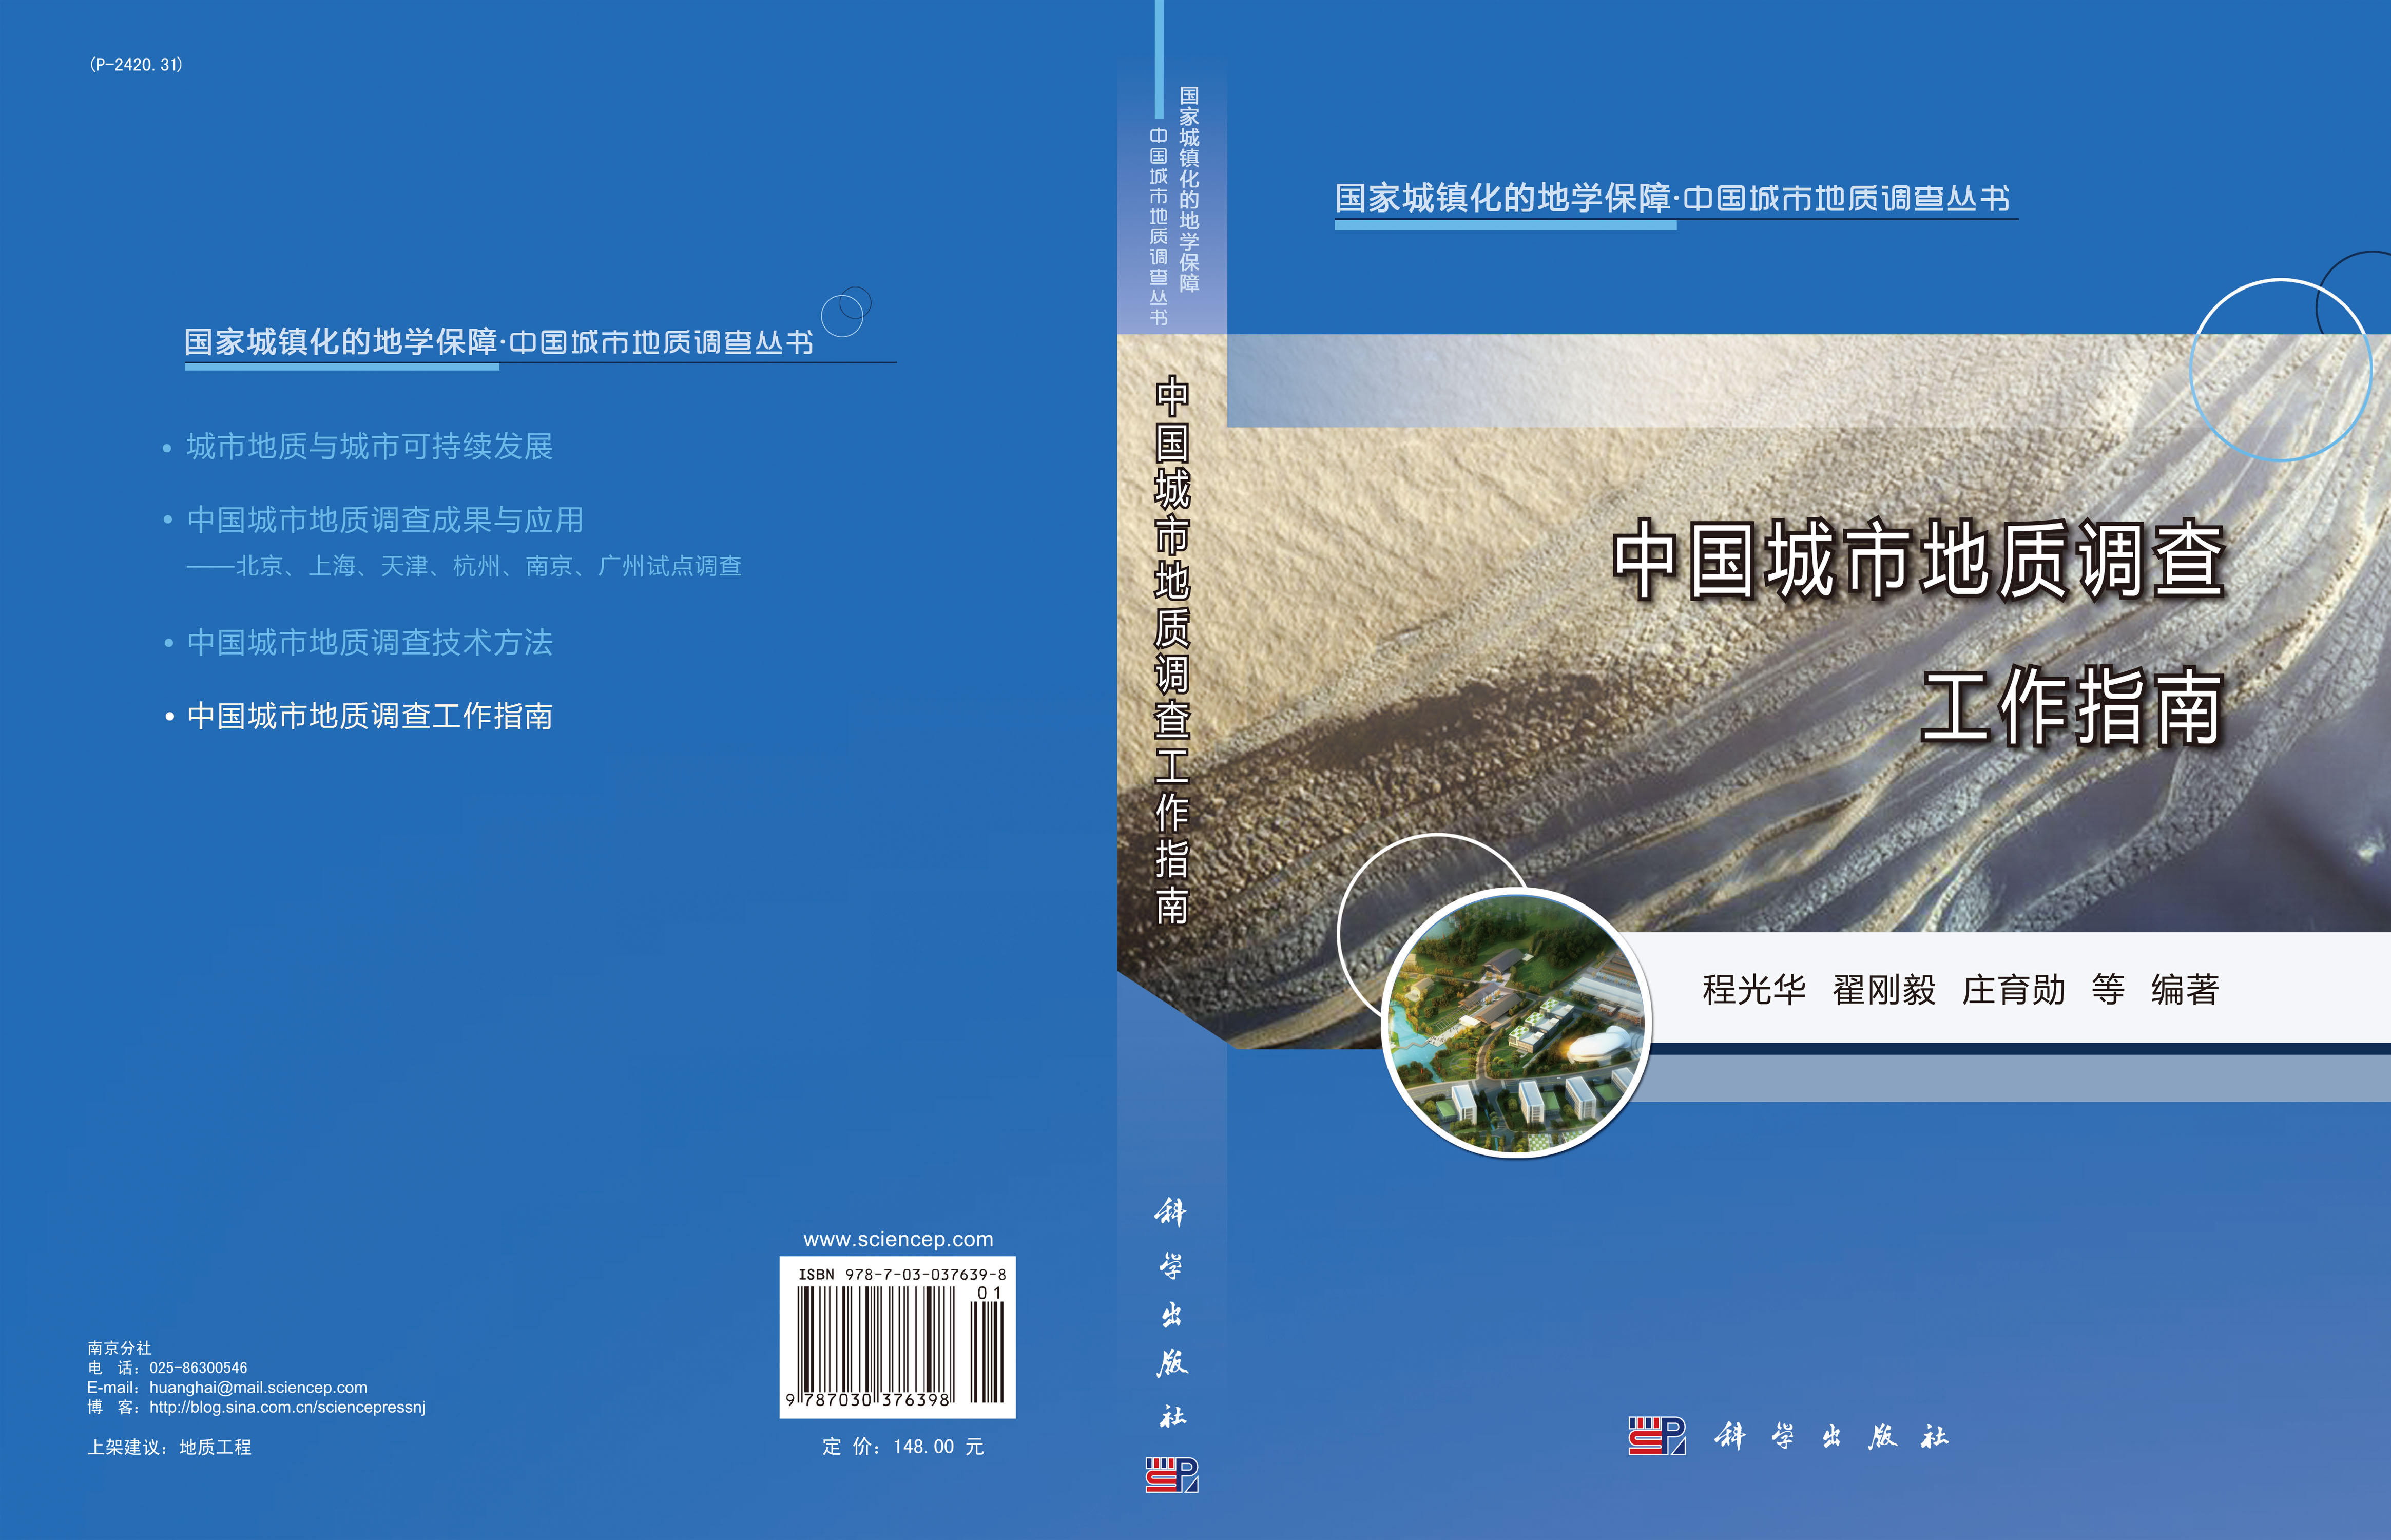 中国城市地质调查工作指南